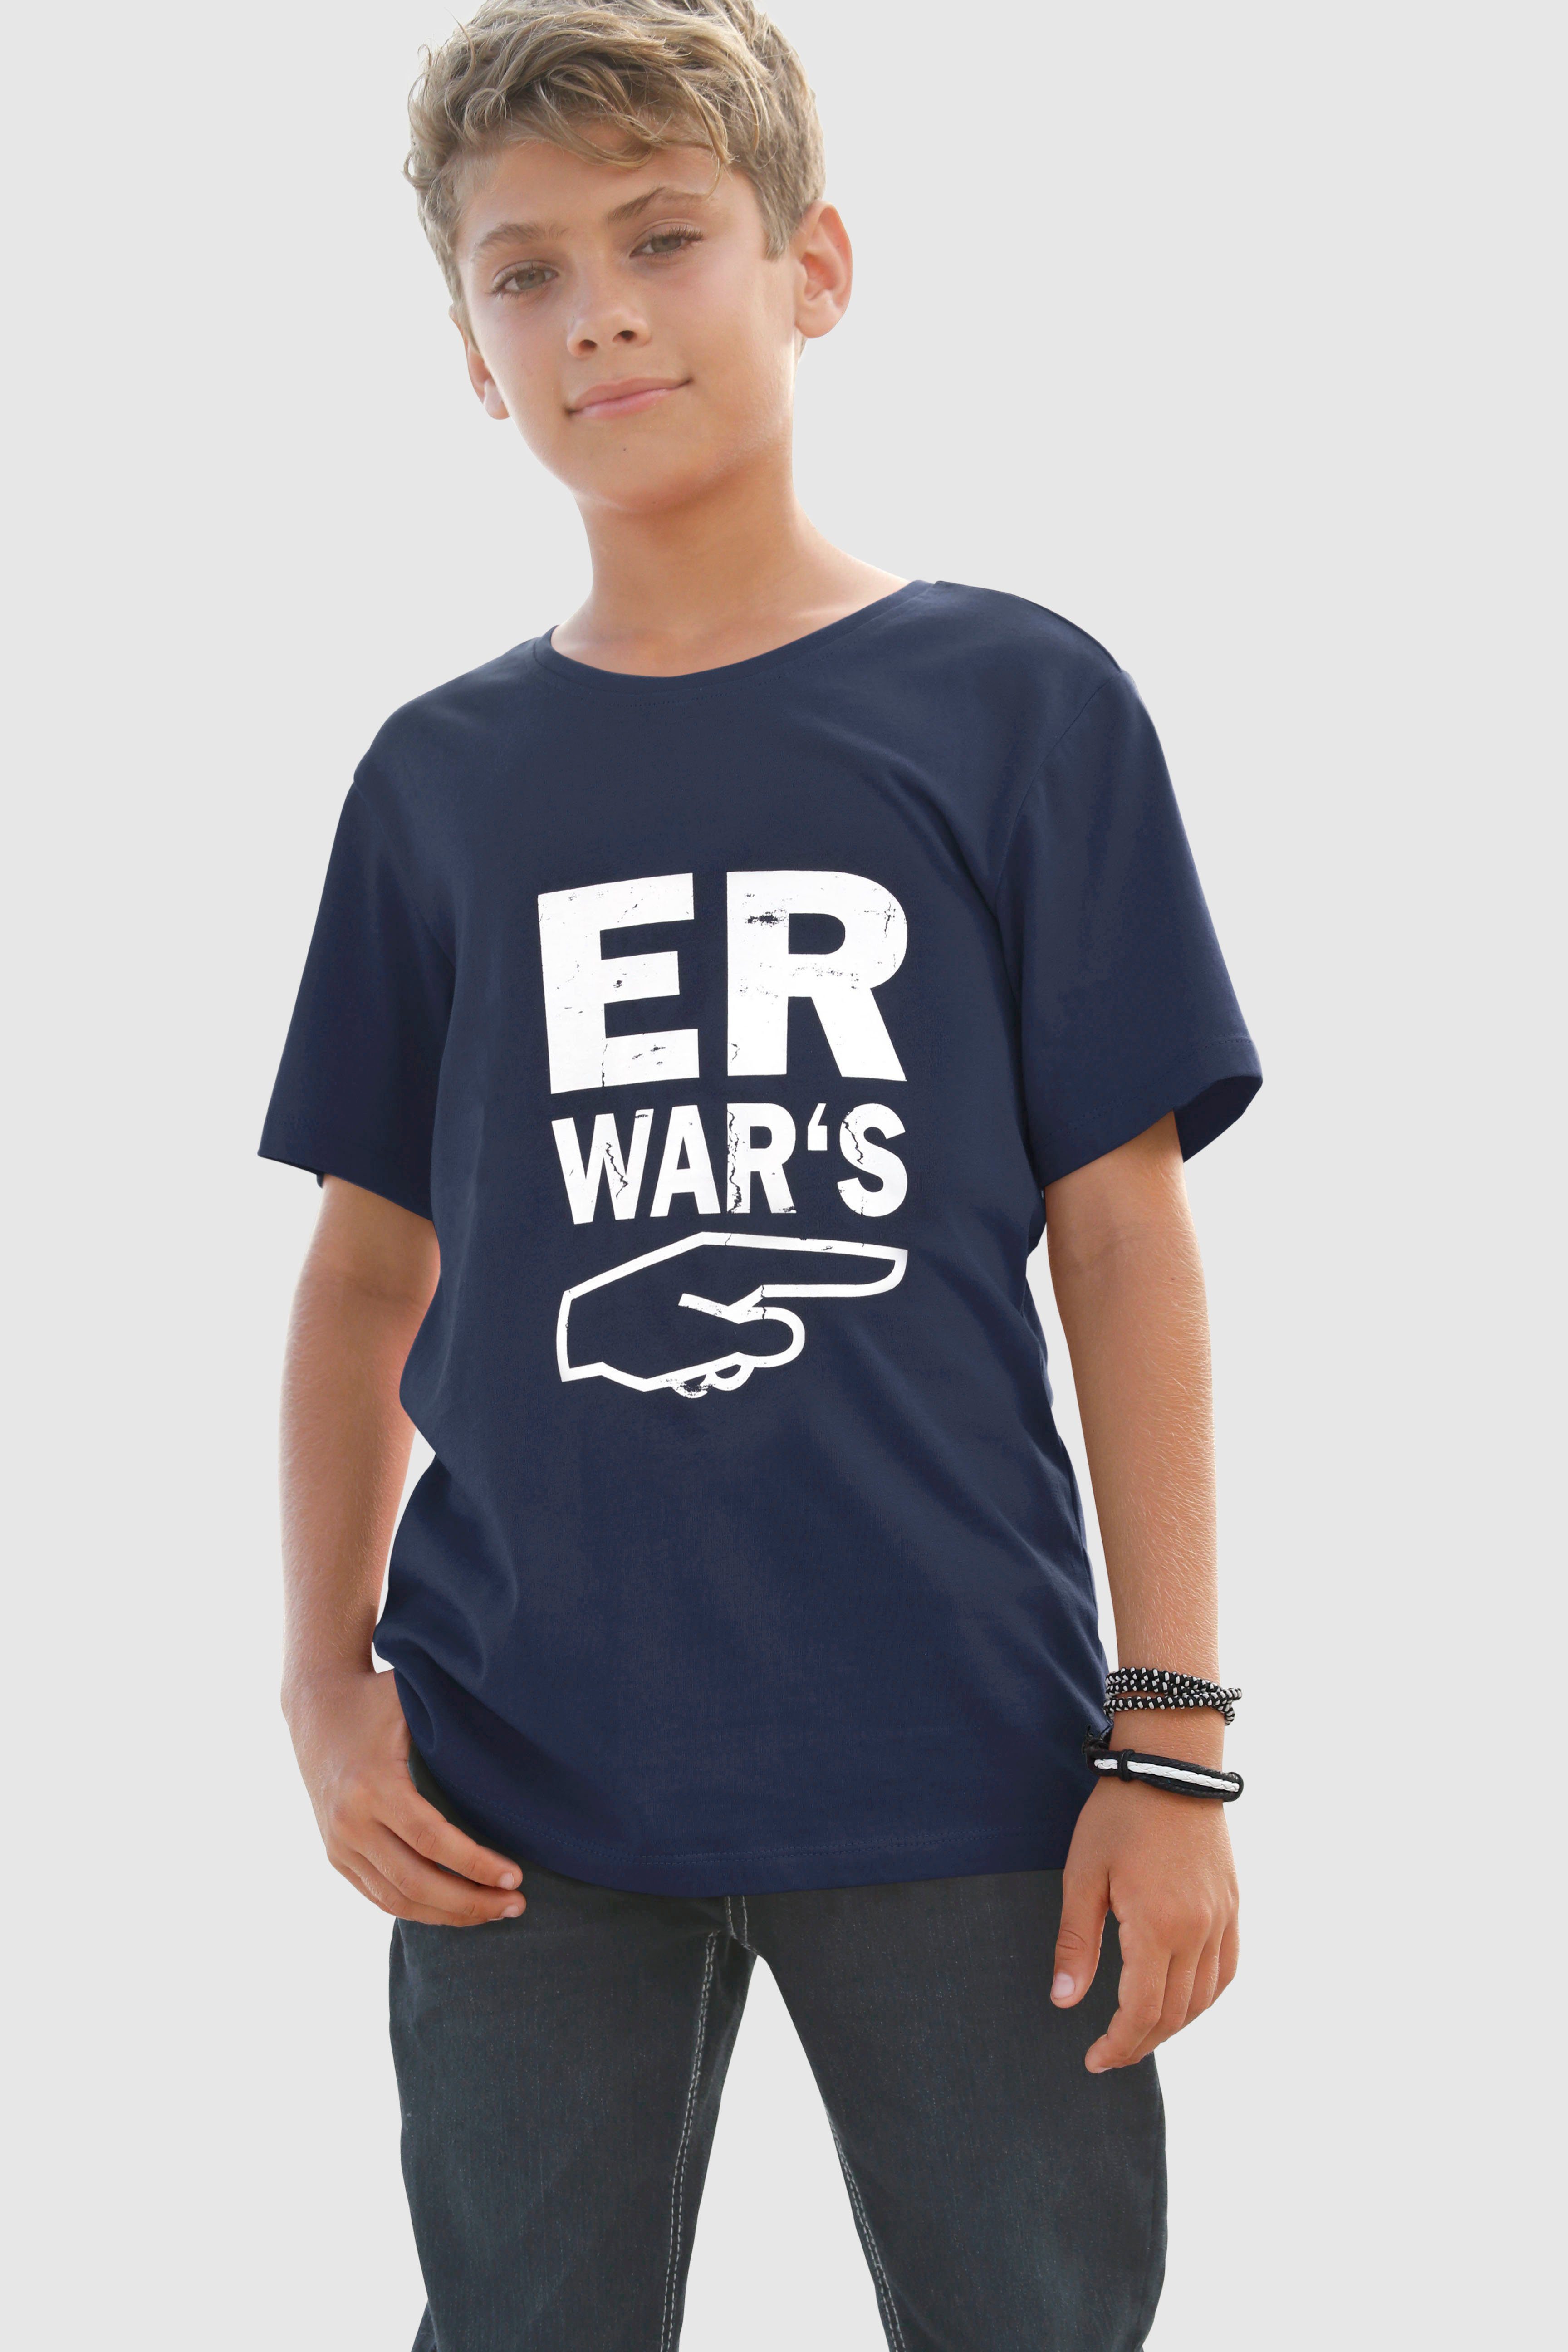 T-Shirt Spruch WAR`S, ER KIDSWORLD